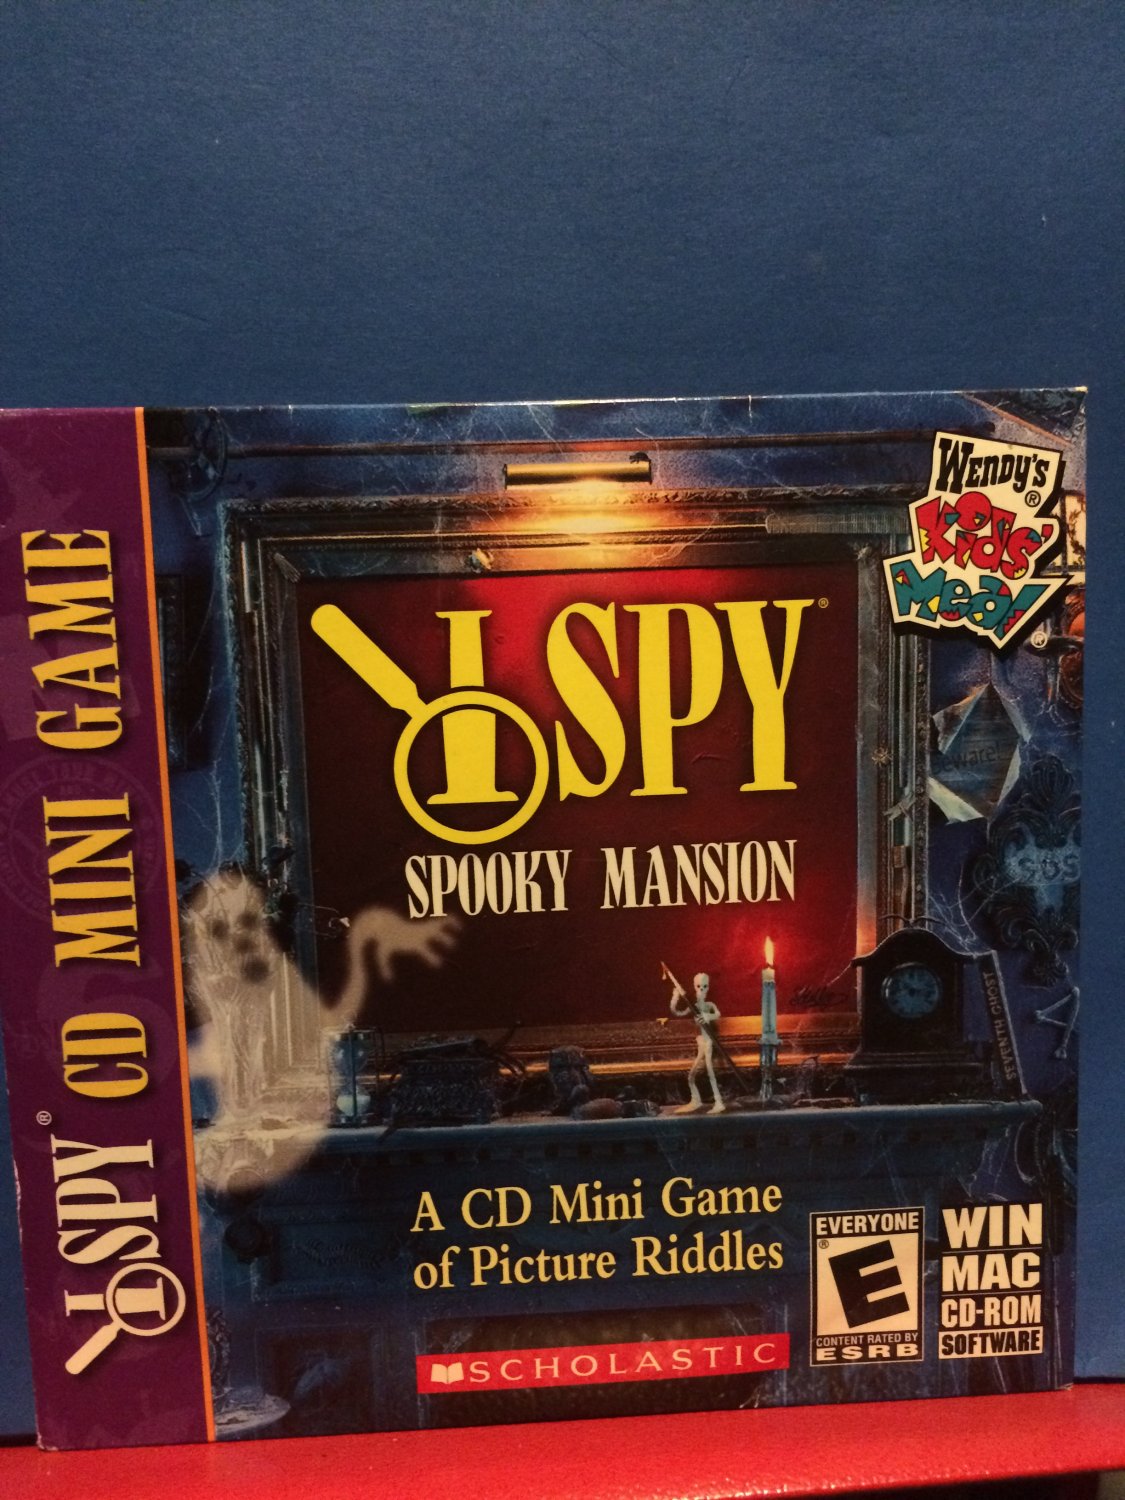 I Spy Spooky Mansion CD mini game